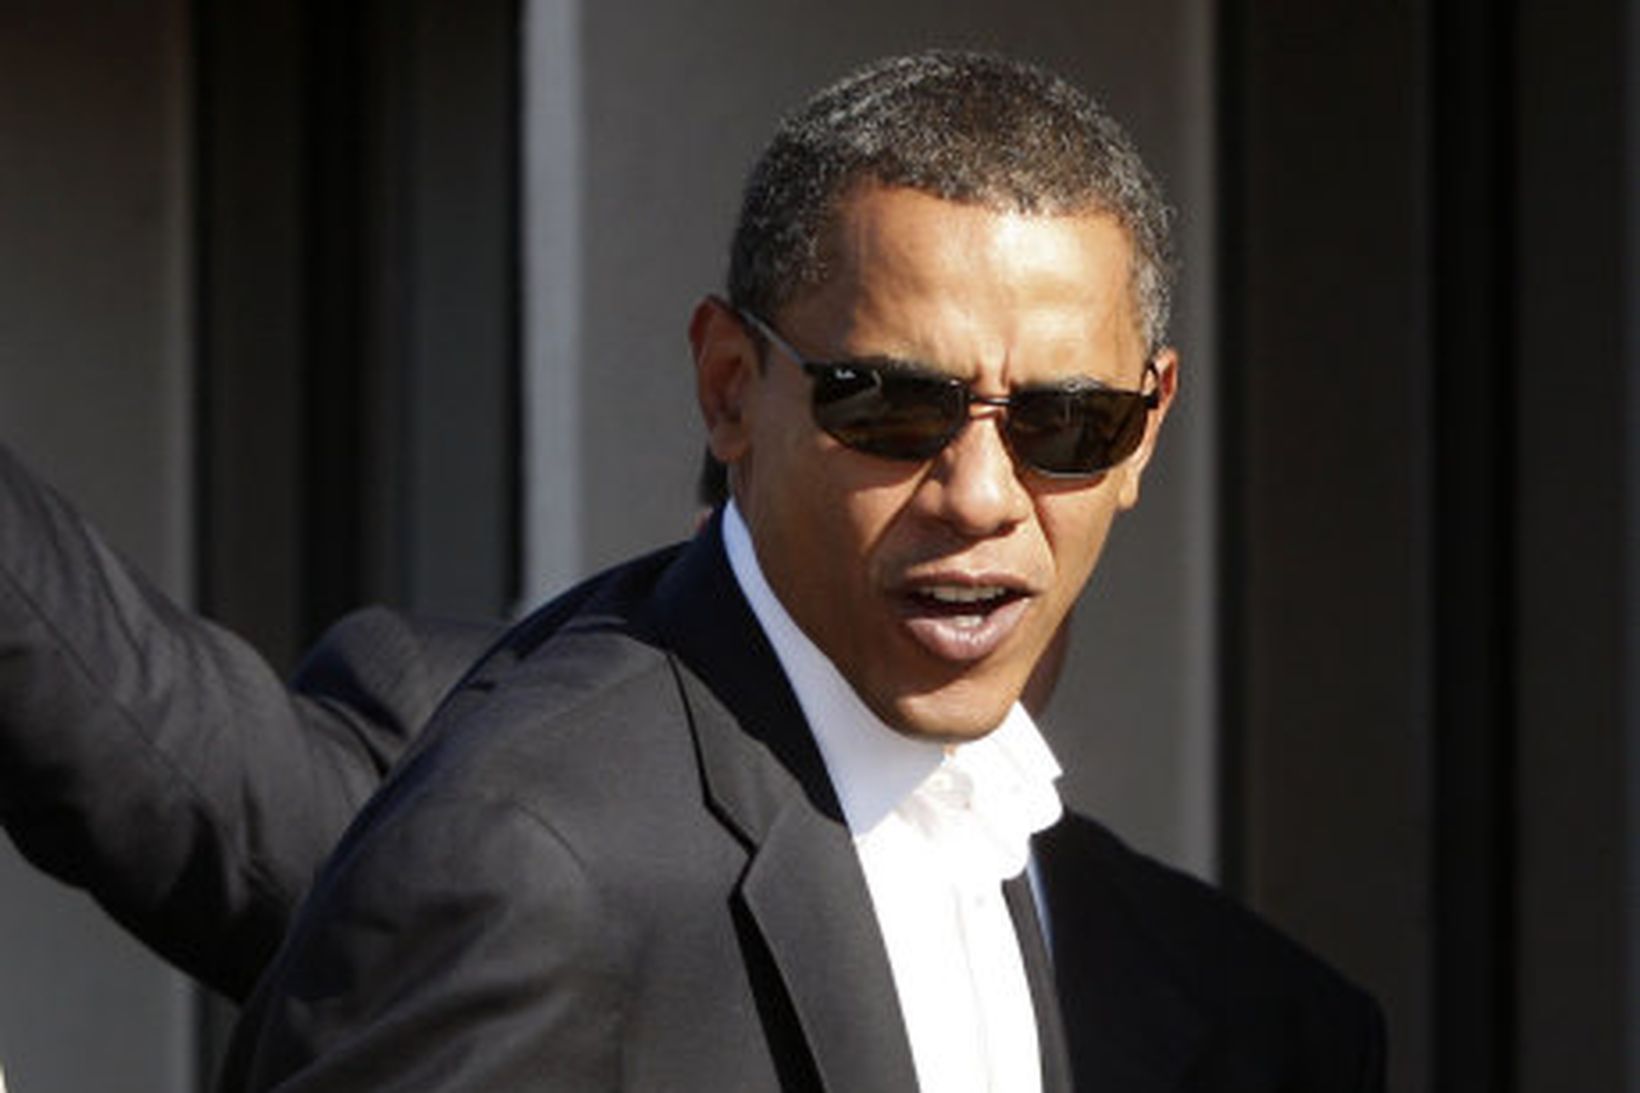 Obama varar stuðningsmenn sína við að vera of sigurvissir